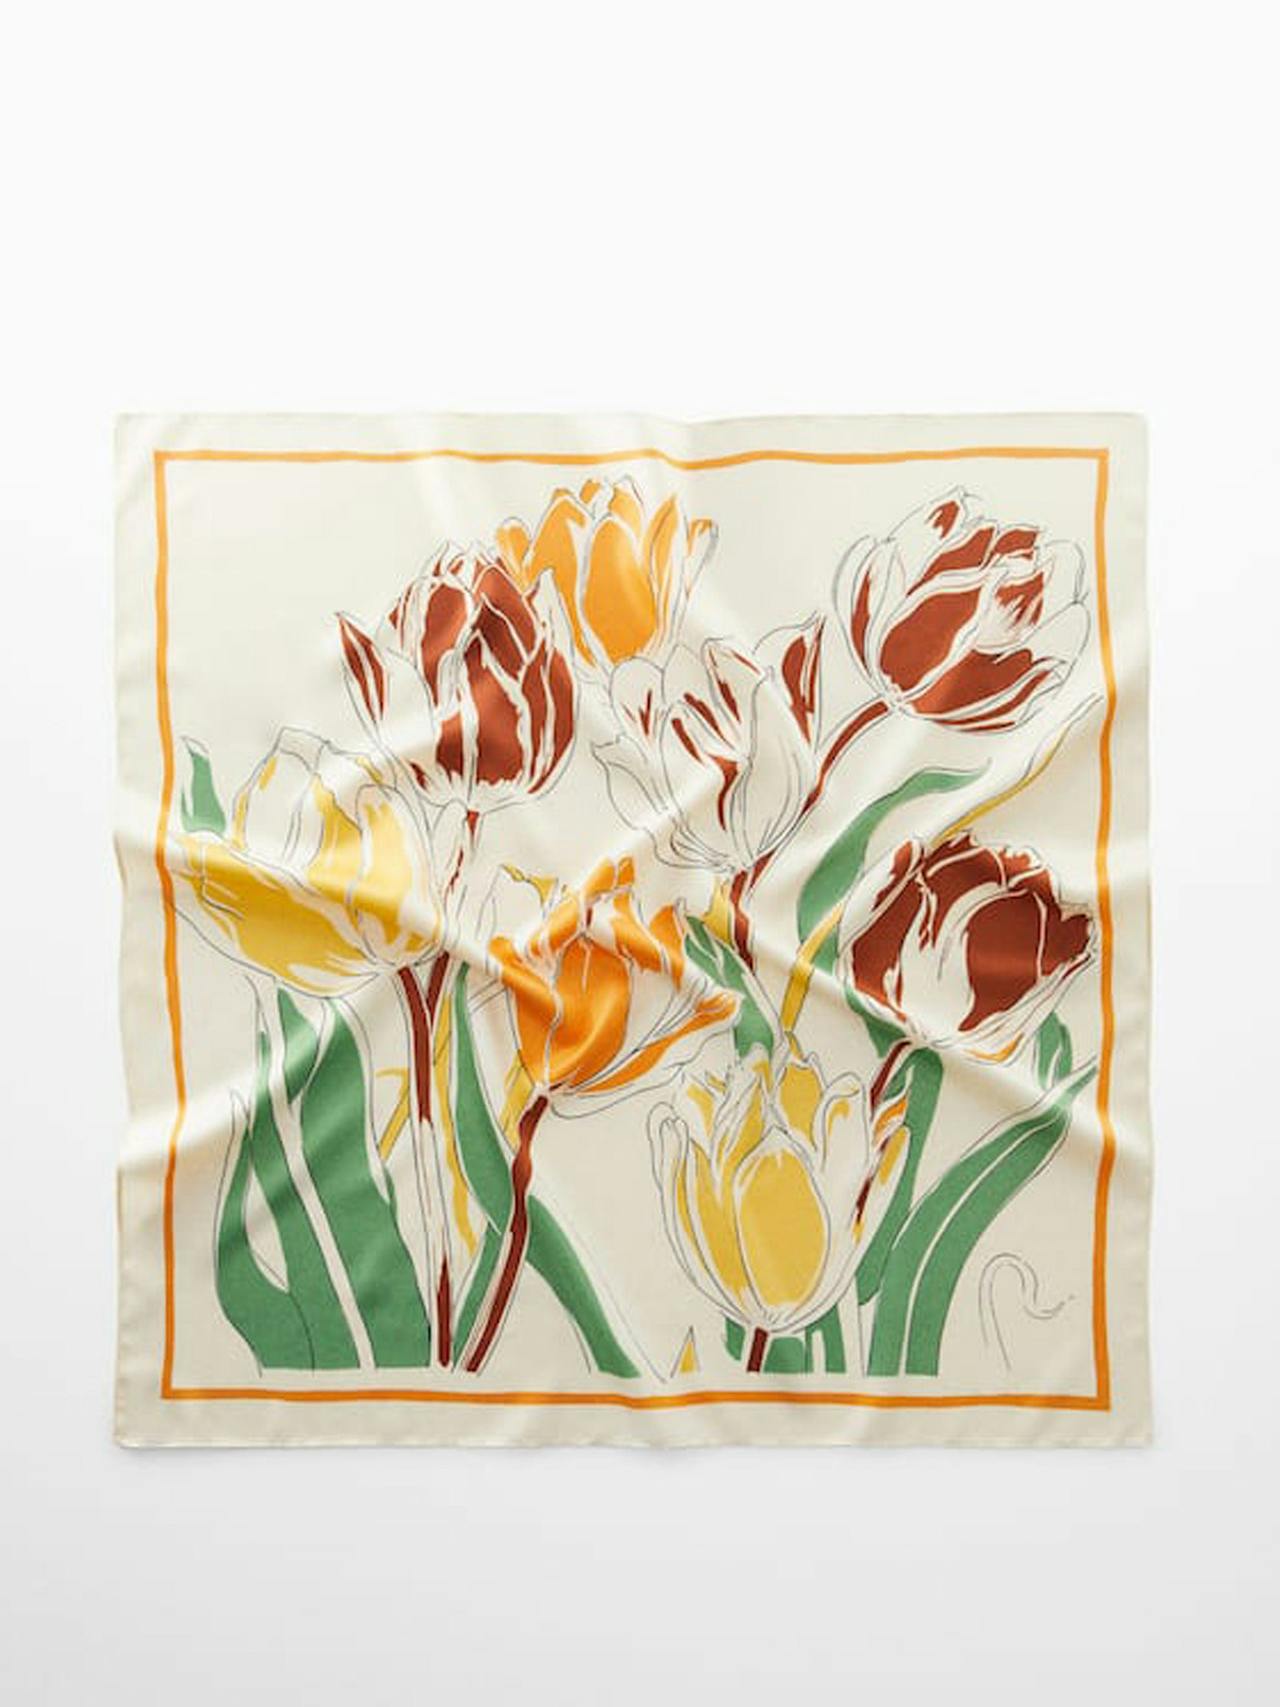 Floral printed scarf